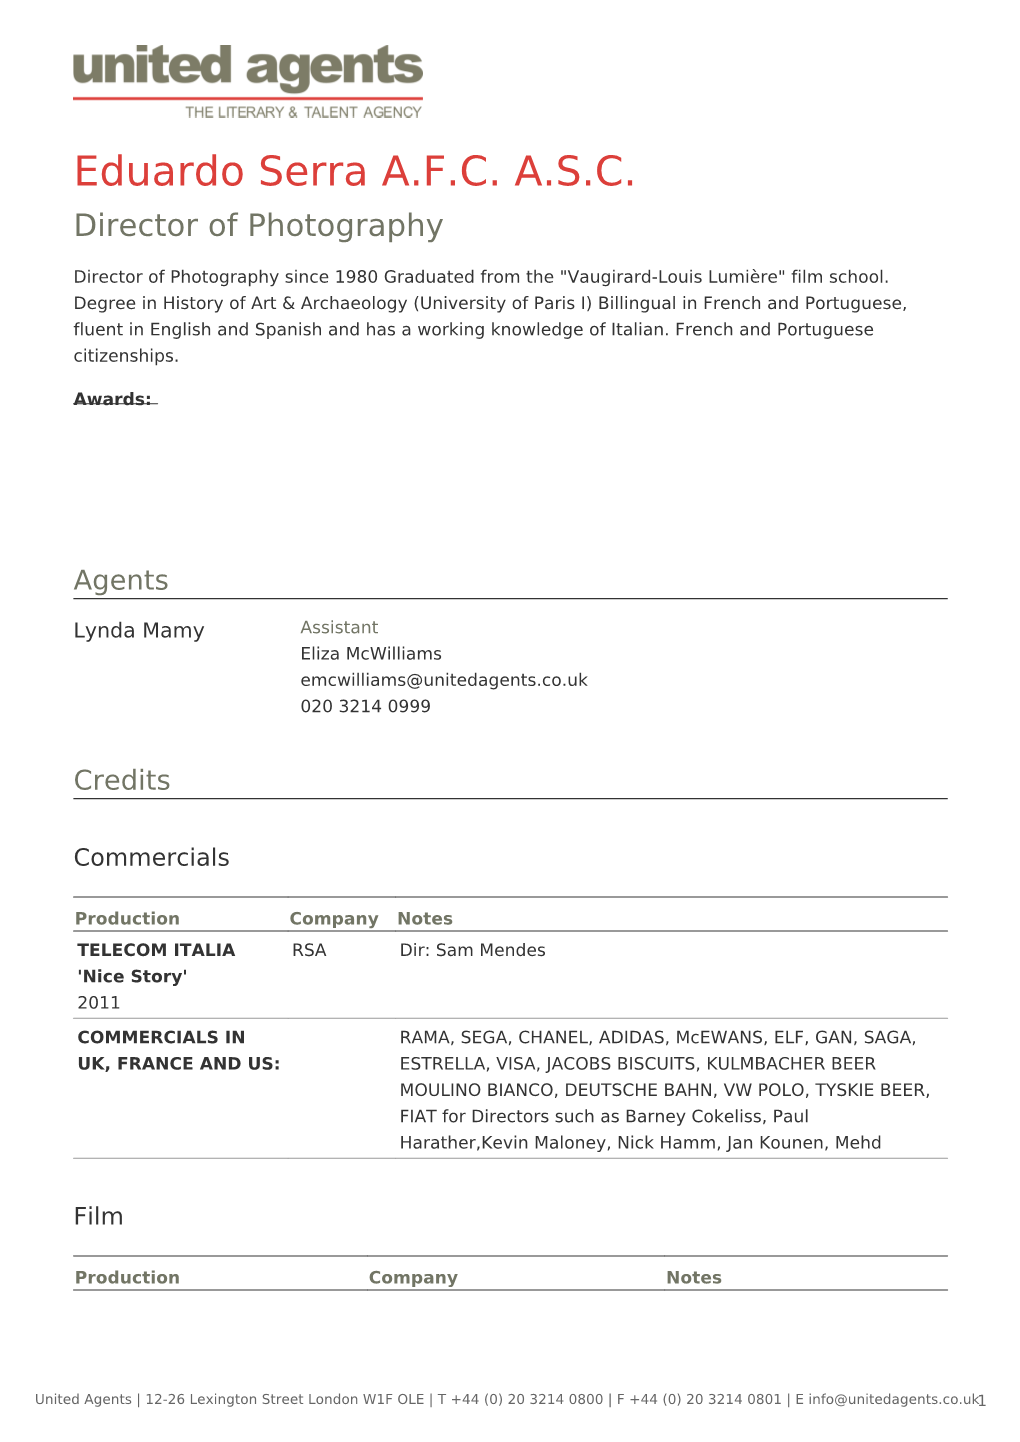 Eduardo Serra A.F.C. A.S.C. Director of Photography